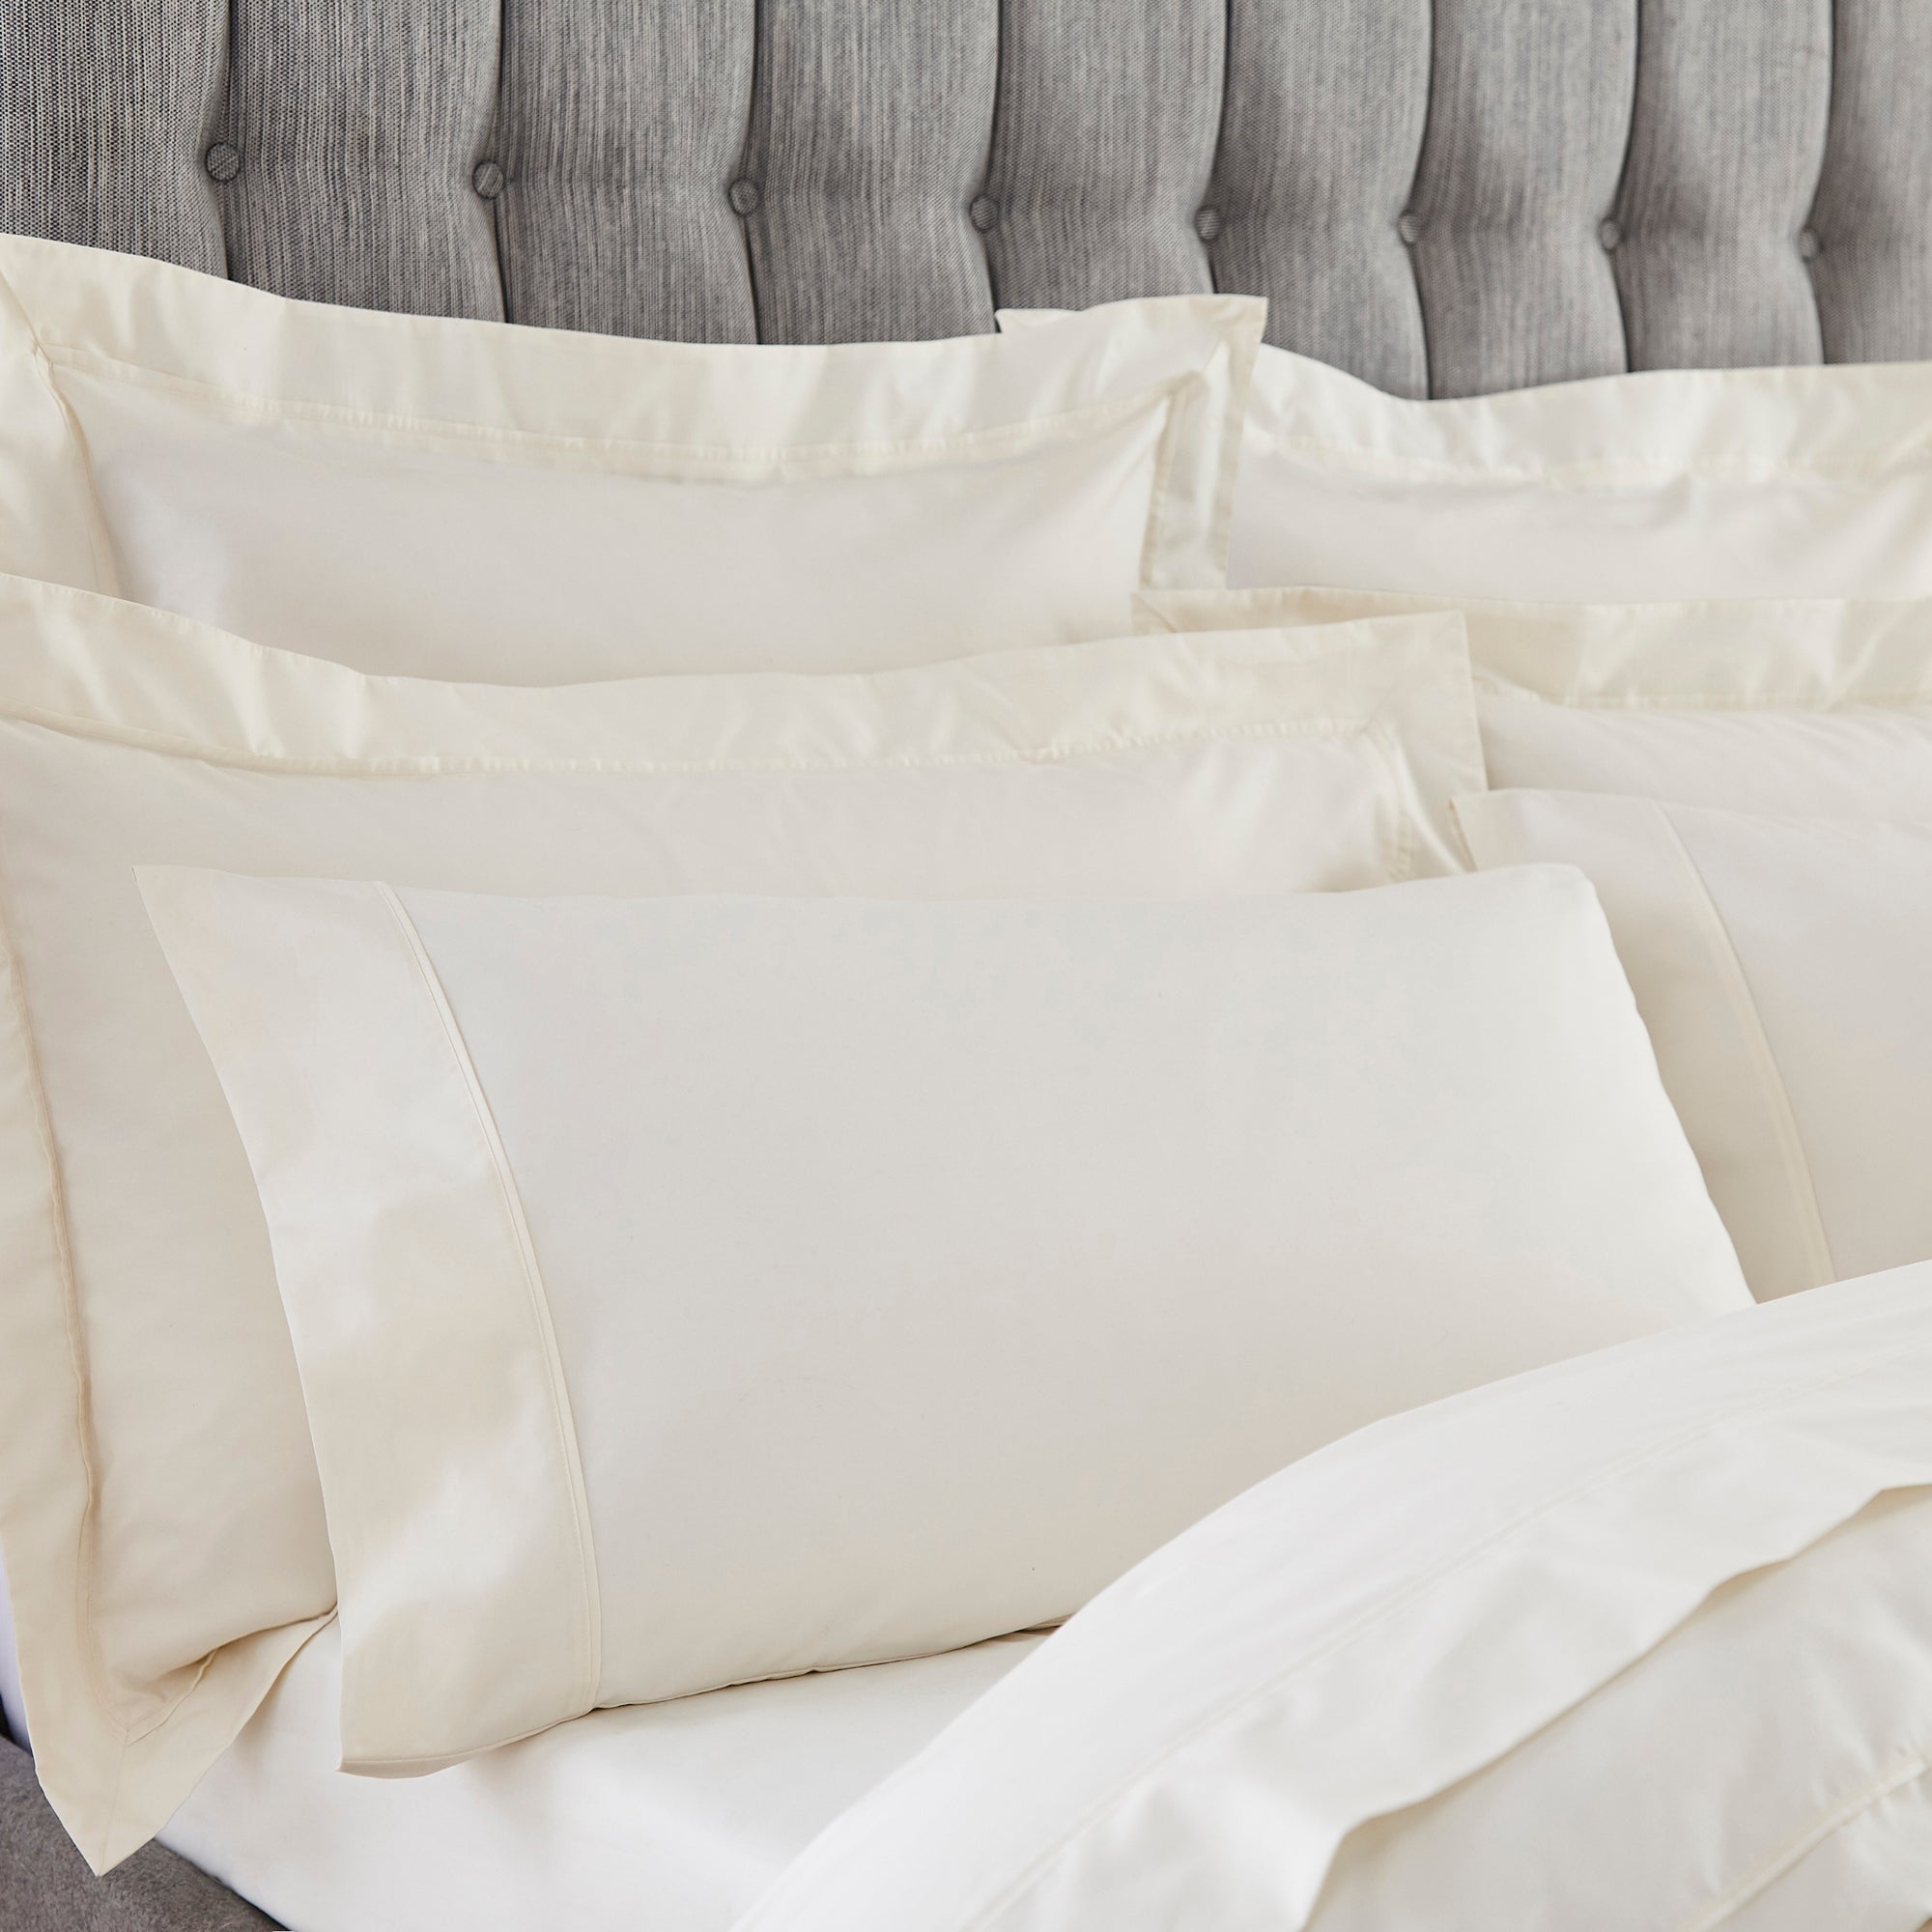 Dorma Egyptian Cotton 400 Thread Count Percale Standard Pillowcase